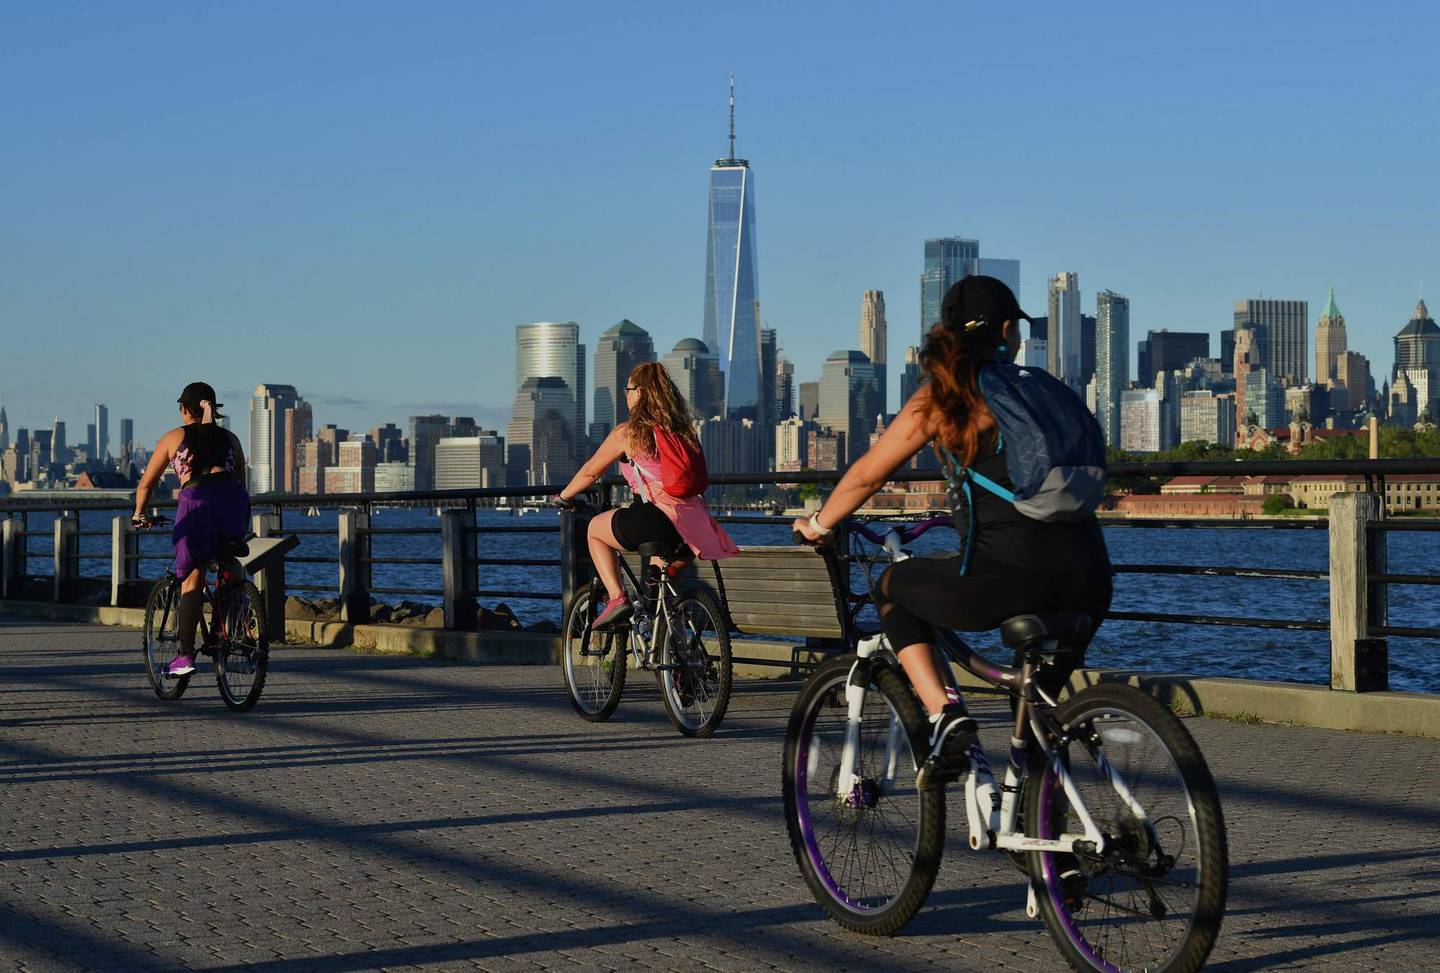 Klimavennlige transportløsninger er noe av det storbyer må innføre. Her syklister i Jersey city rett ved New York.